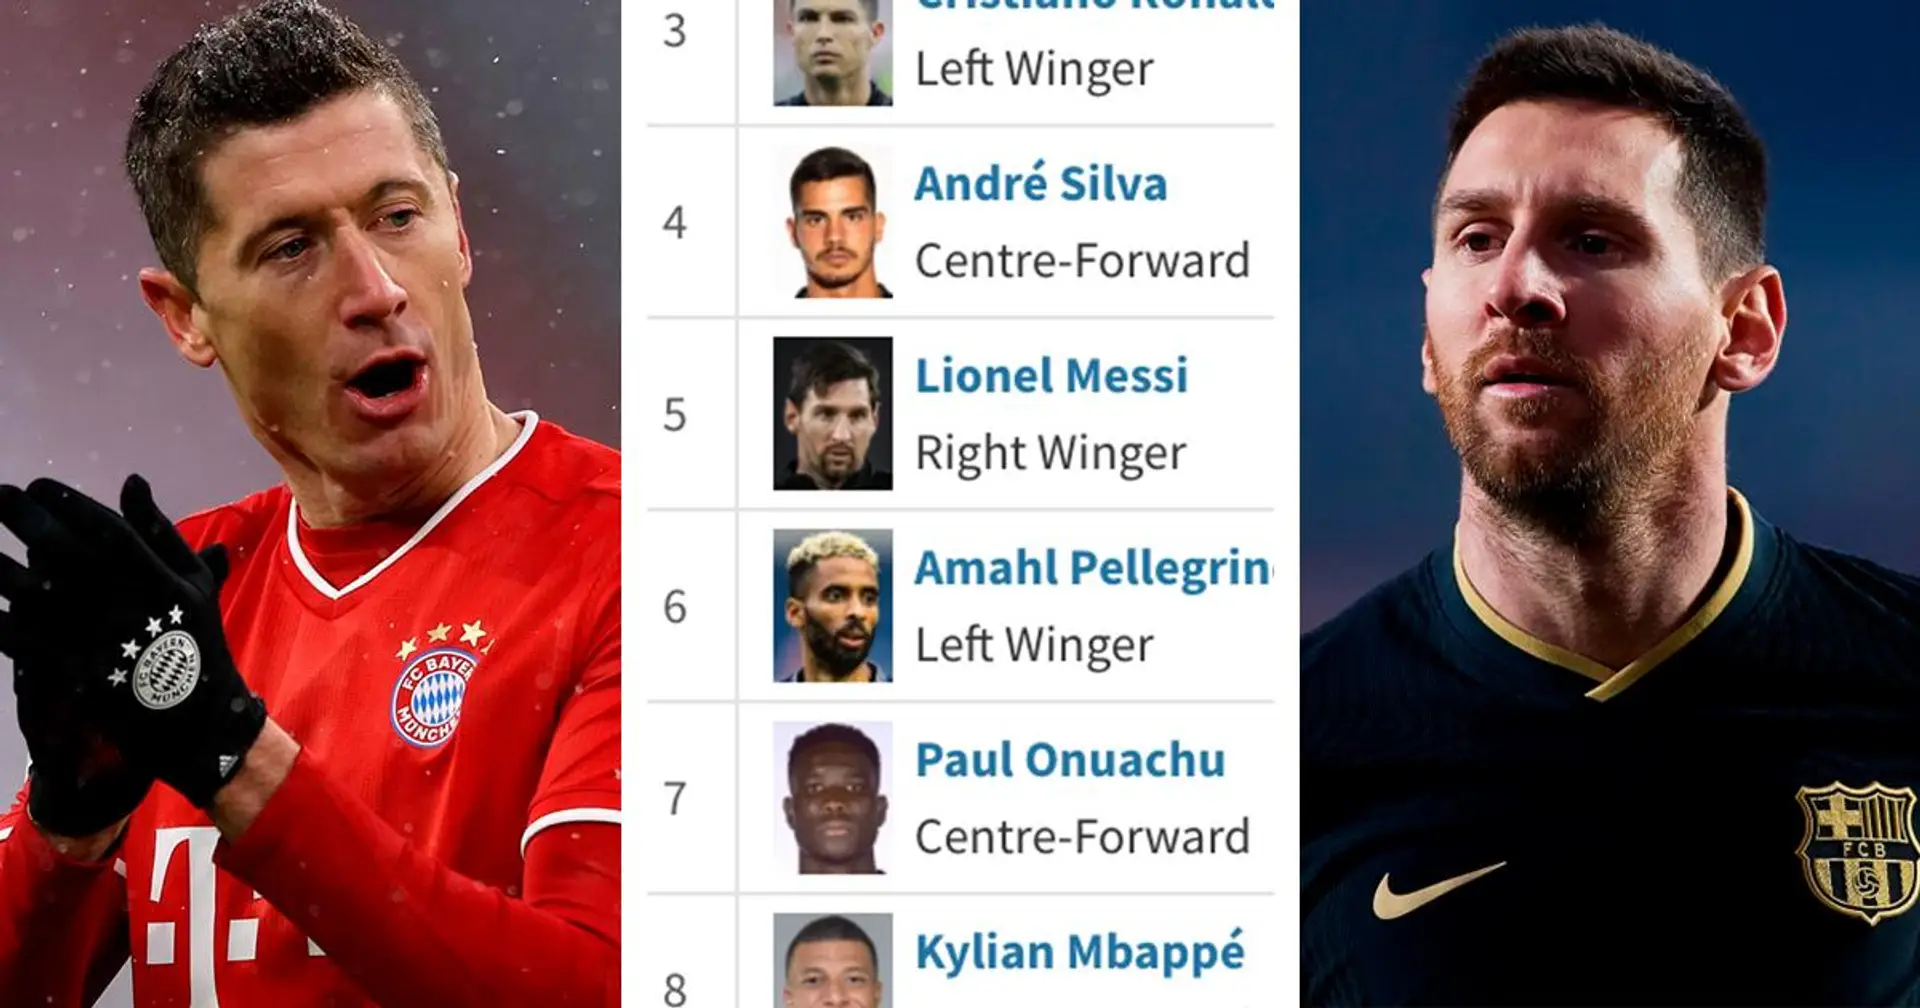 Lewandowski loin devant, Messi juste 5e: Classement du Soulier d'Or 2021 jusqu'à présent